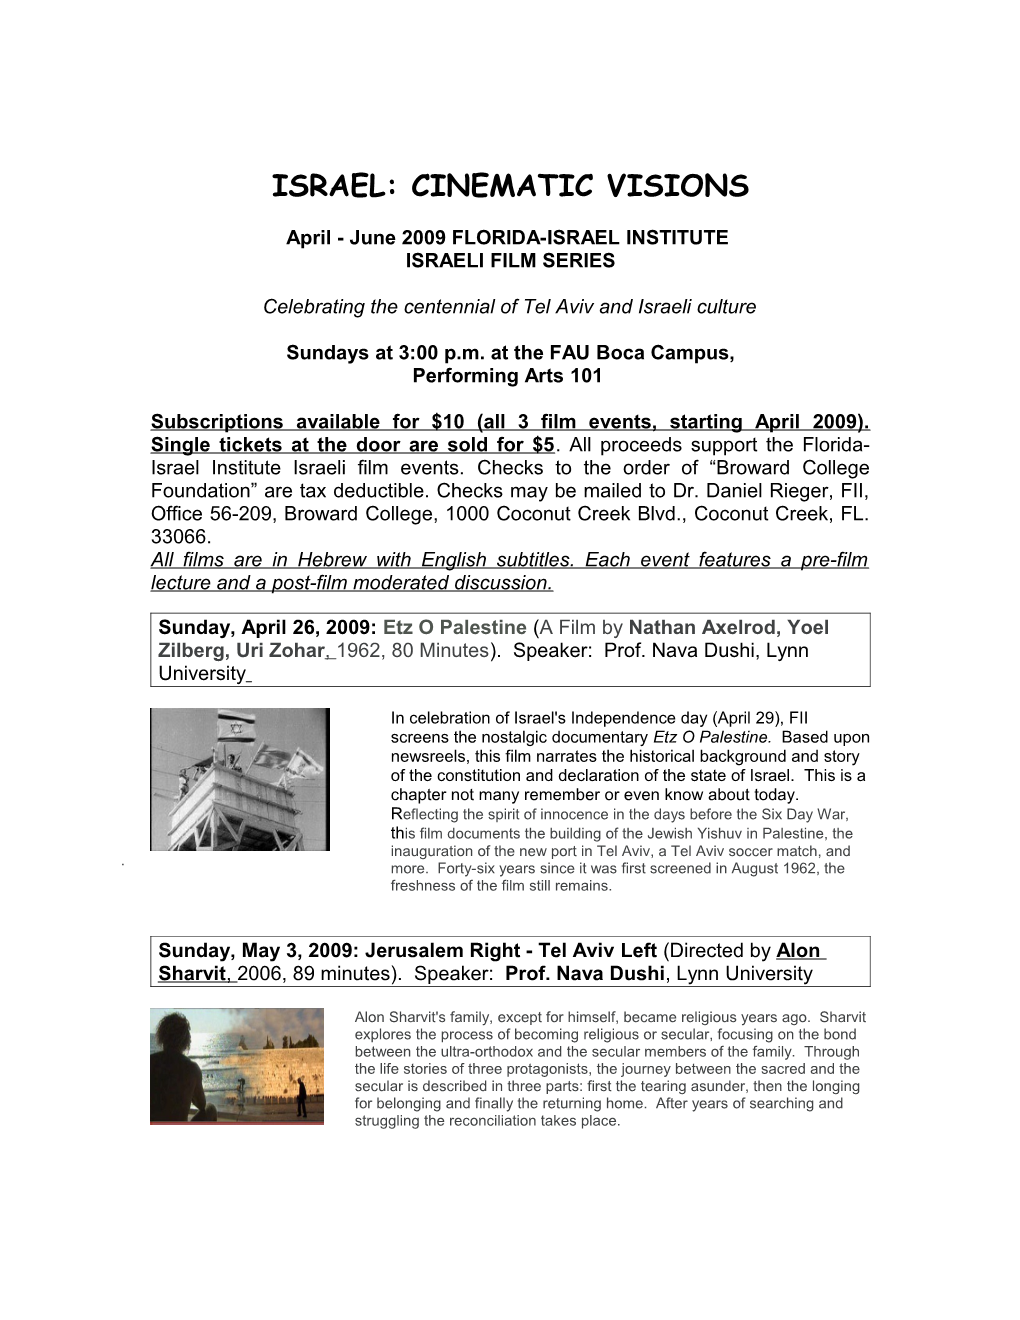 Israel: Cinematic Visions